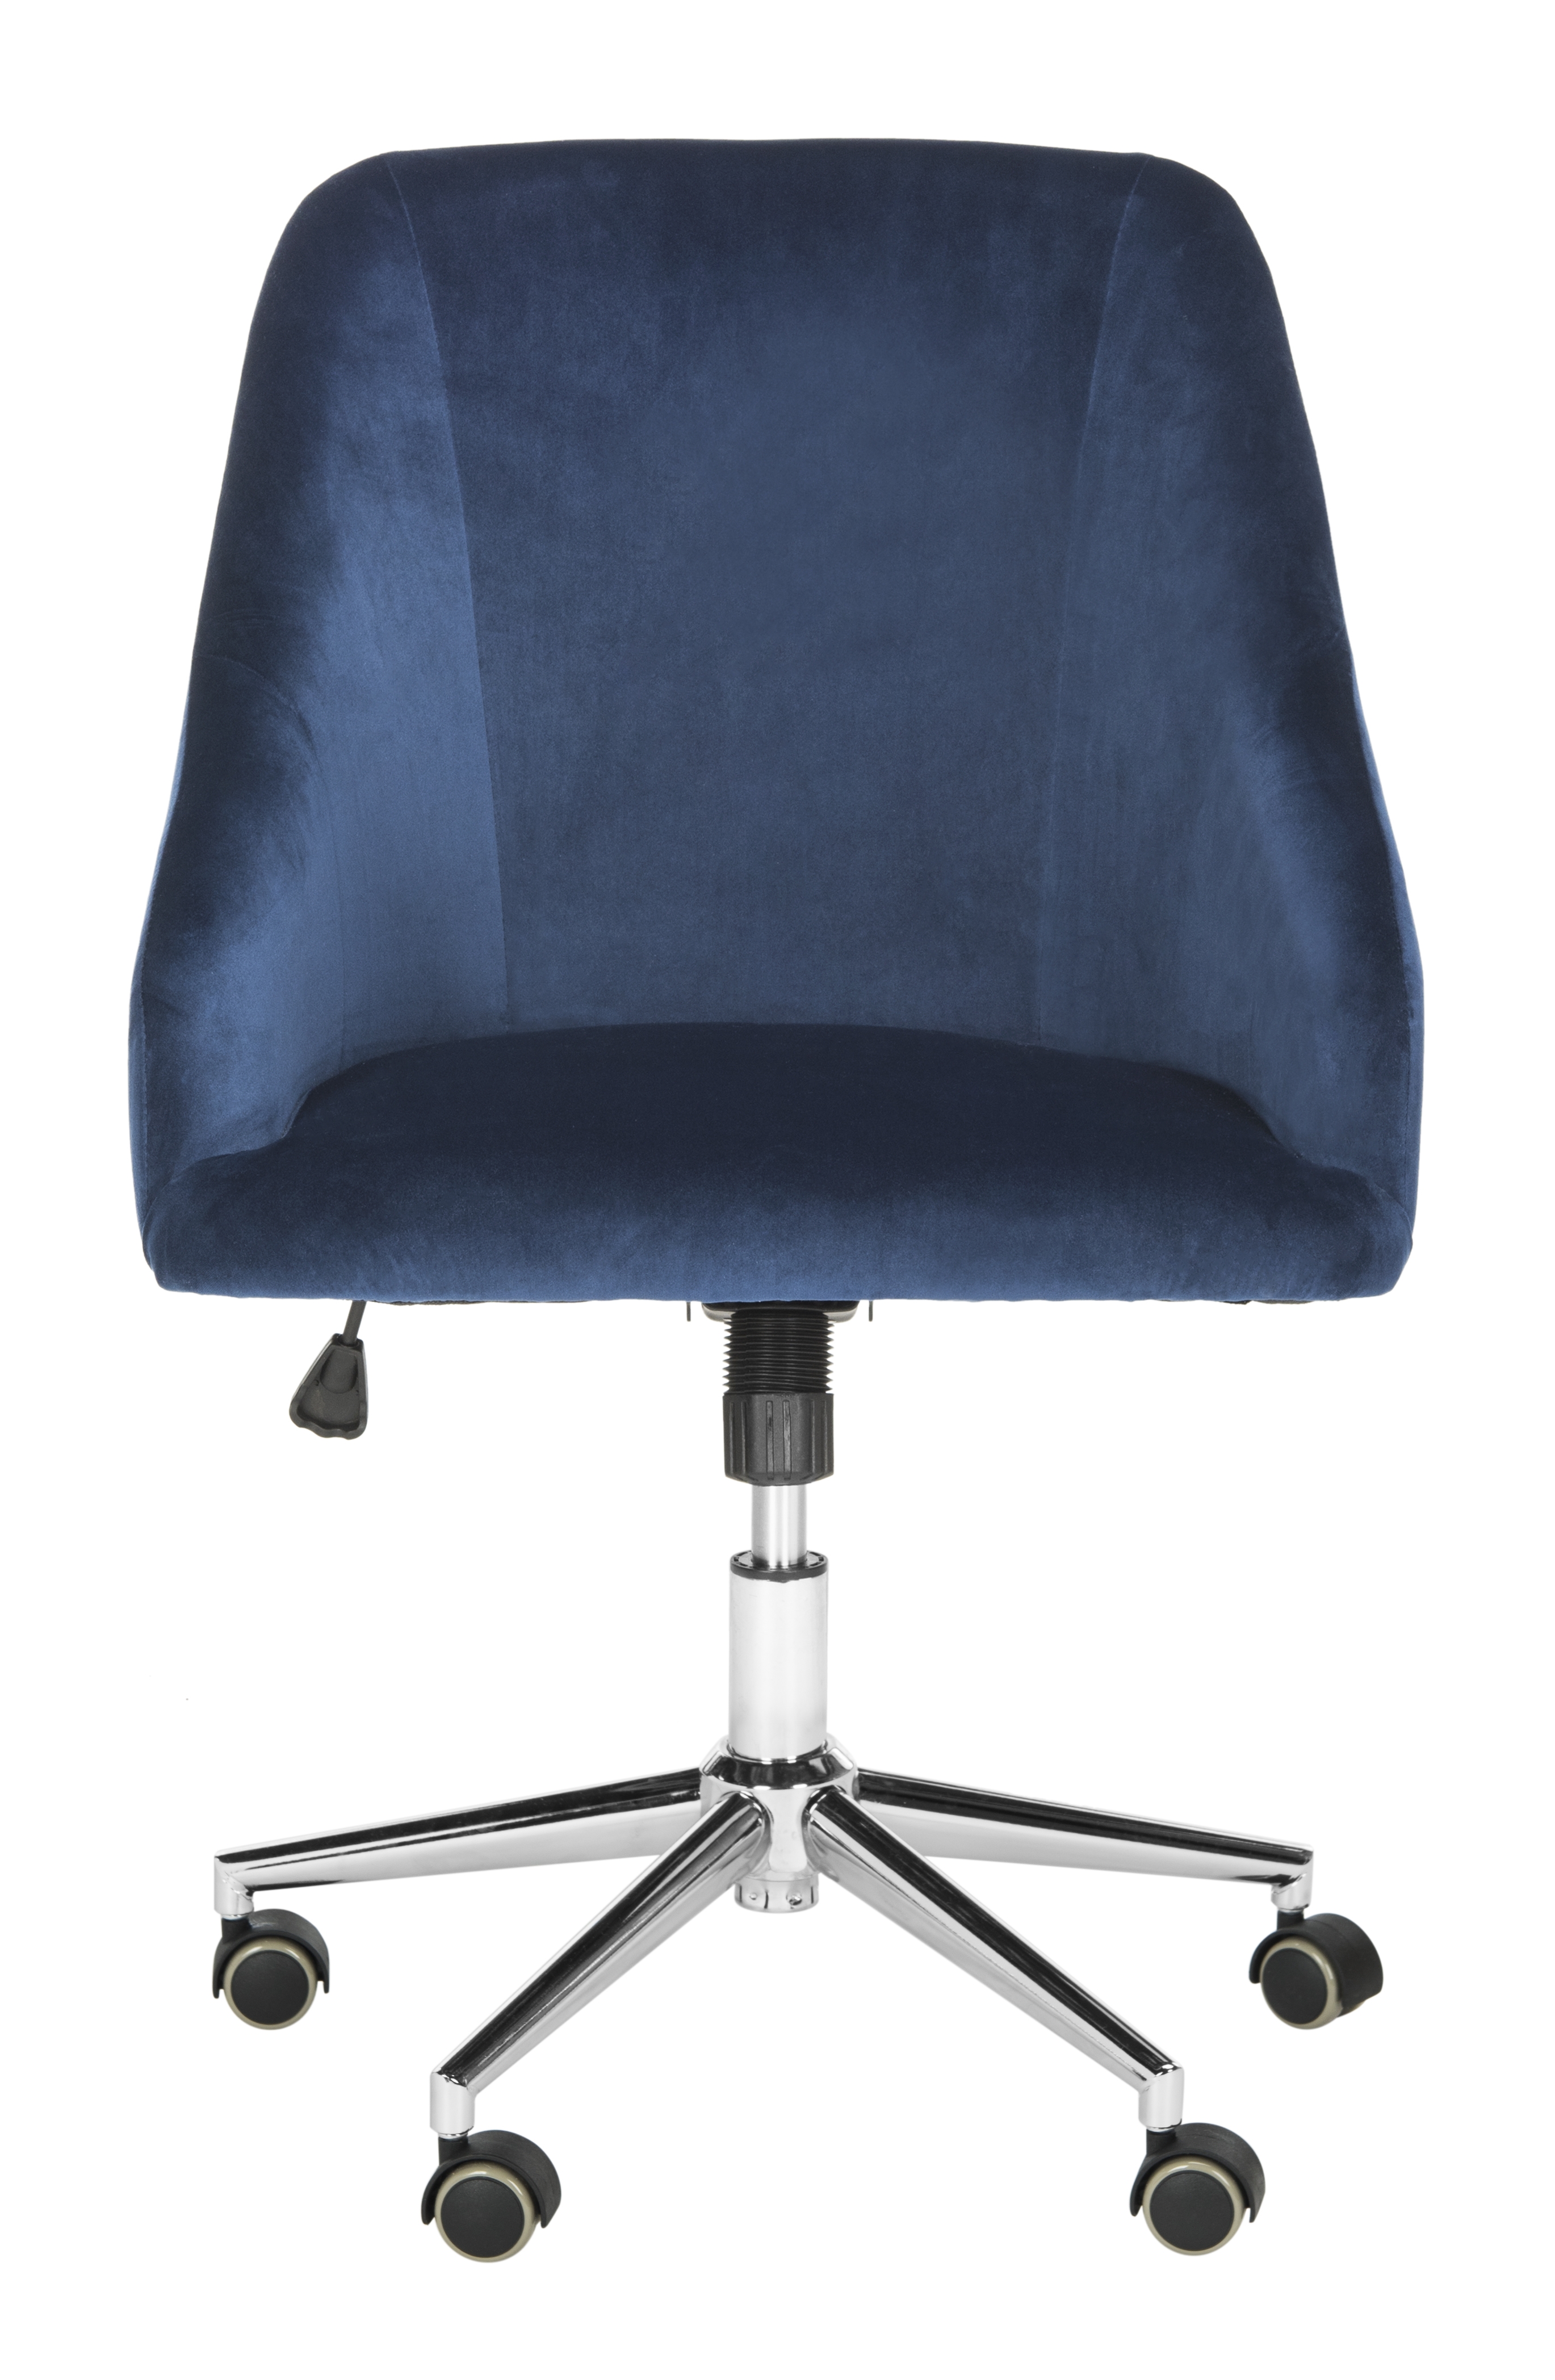 Adrienne Velvet Chrome Leg Swivel Office Chair - Navy/Chrome - Safavieh - Image 0